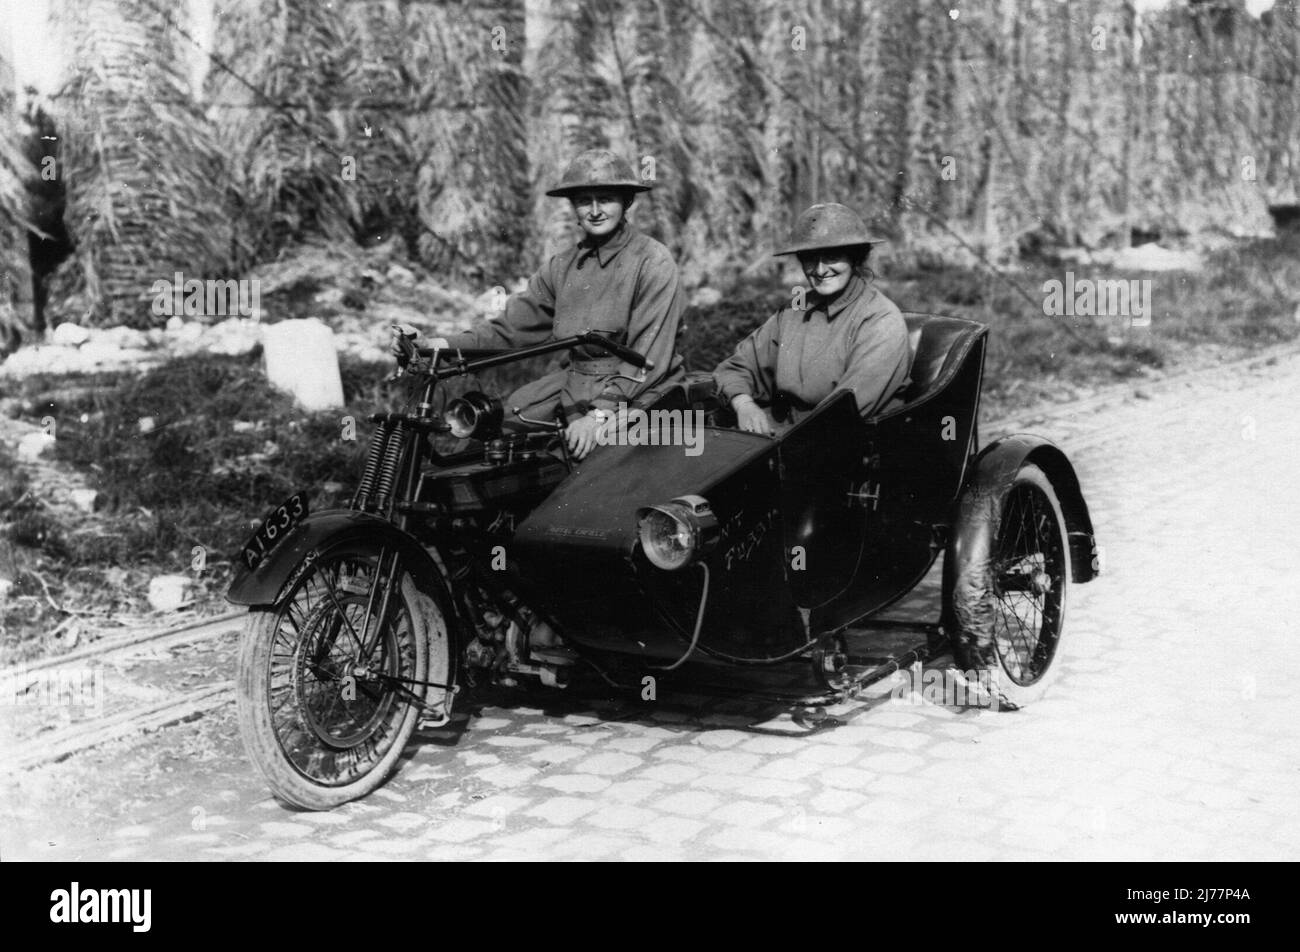 Deux infirmières britanniques sur une moto et une voiture latérale Toyal Enfield. Selon la légende originale de la photo, ils se trouvent à moins de 500 mètres de la ligne de front en Belgique. Banque D'Images